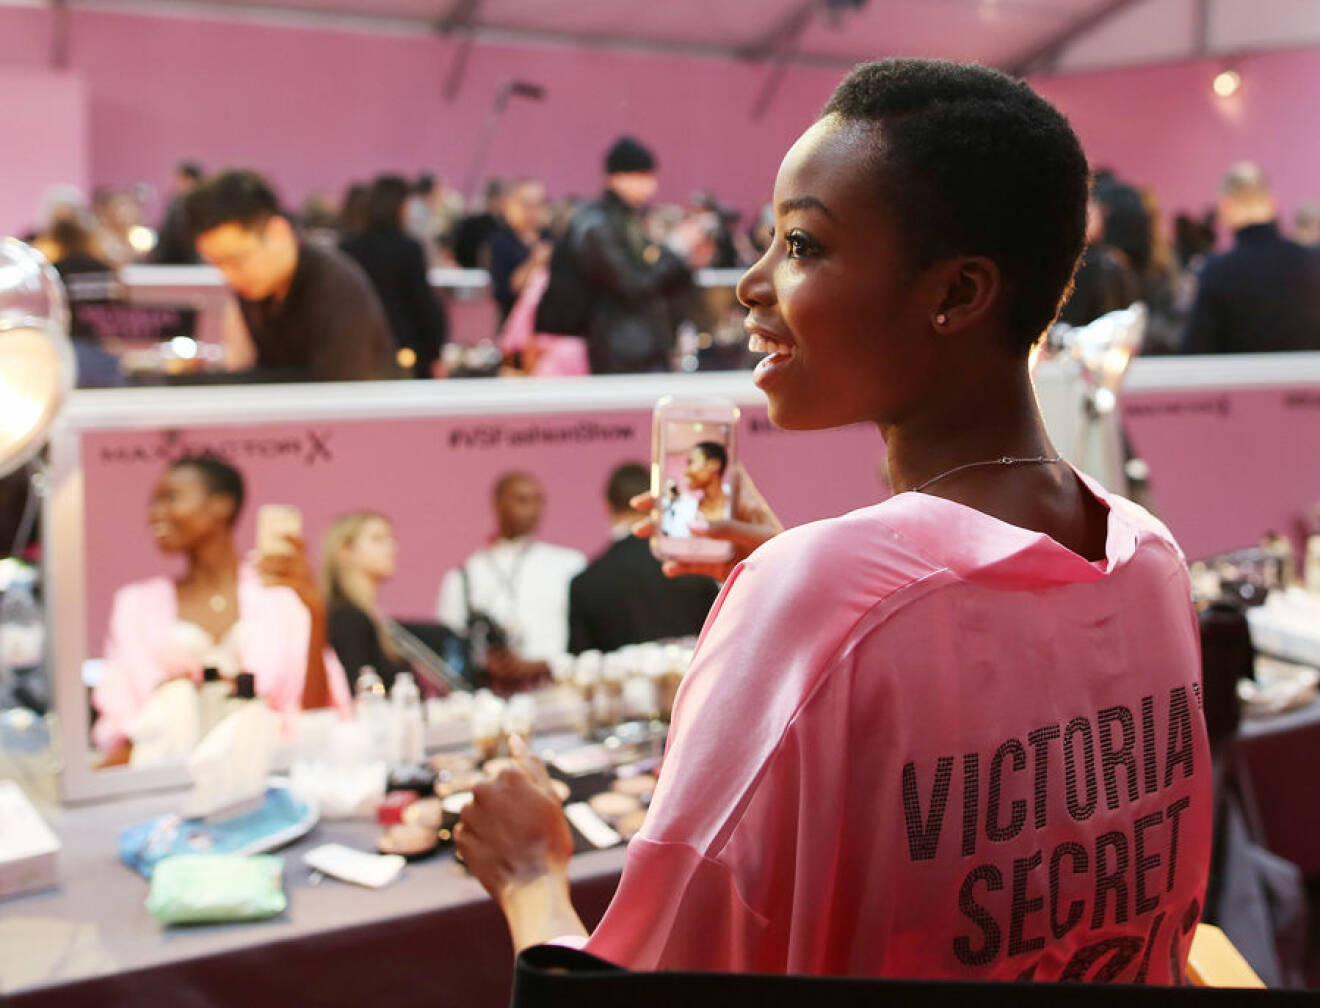 Maria Borges at Victoria's Secret Fashion Show - Hair and Makeup, Paris, 2016, Paris, France